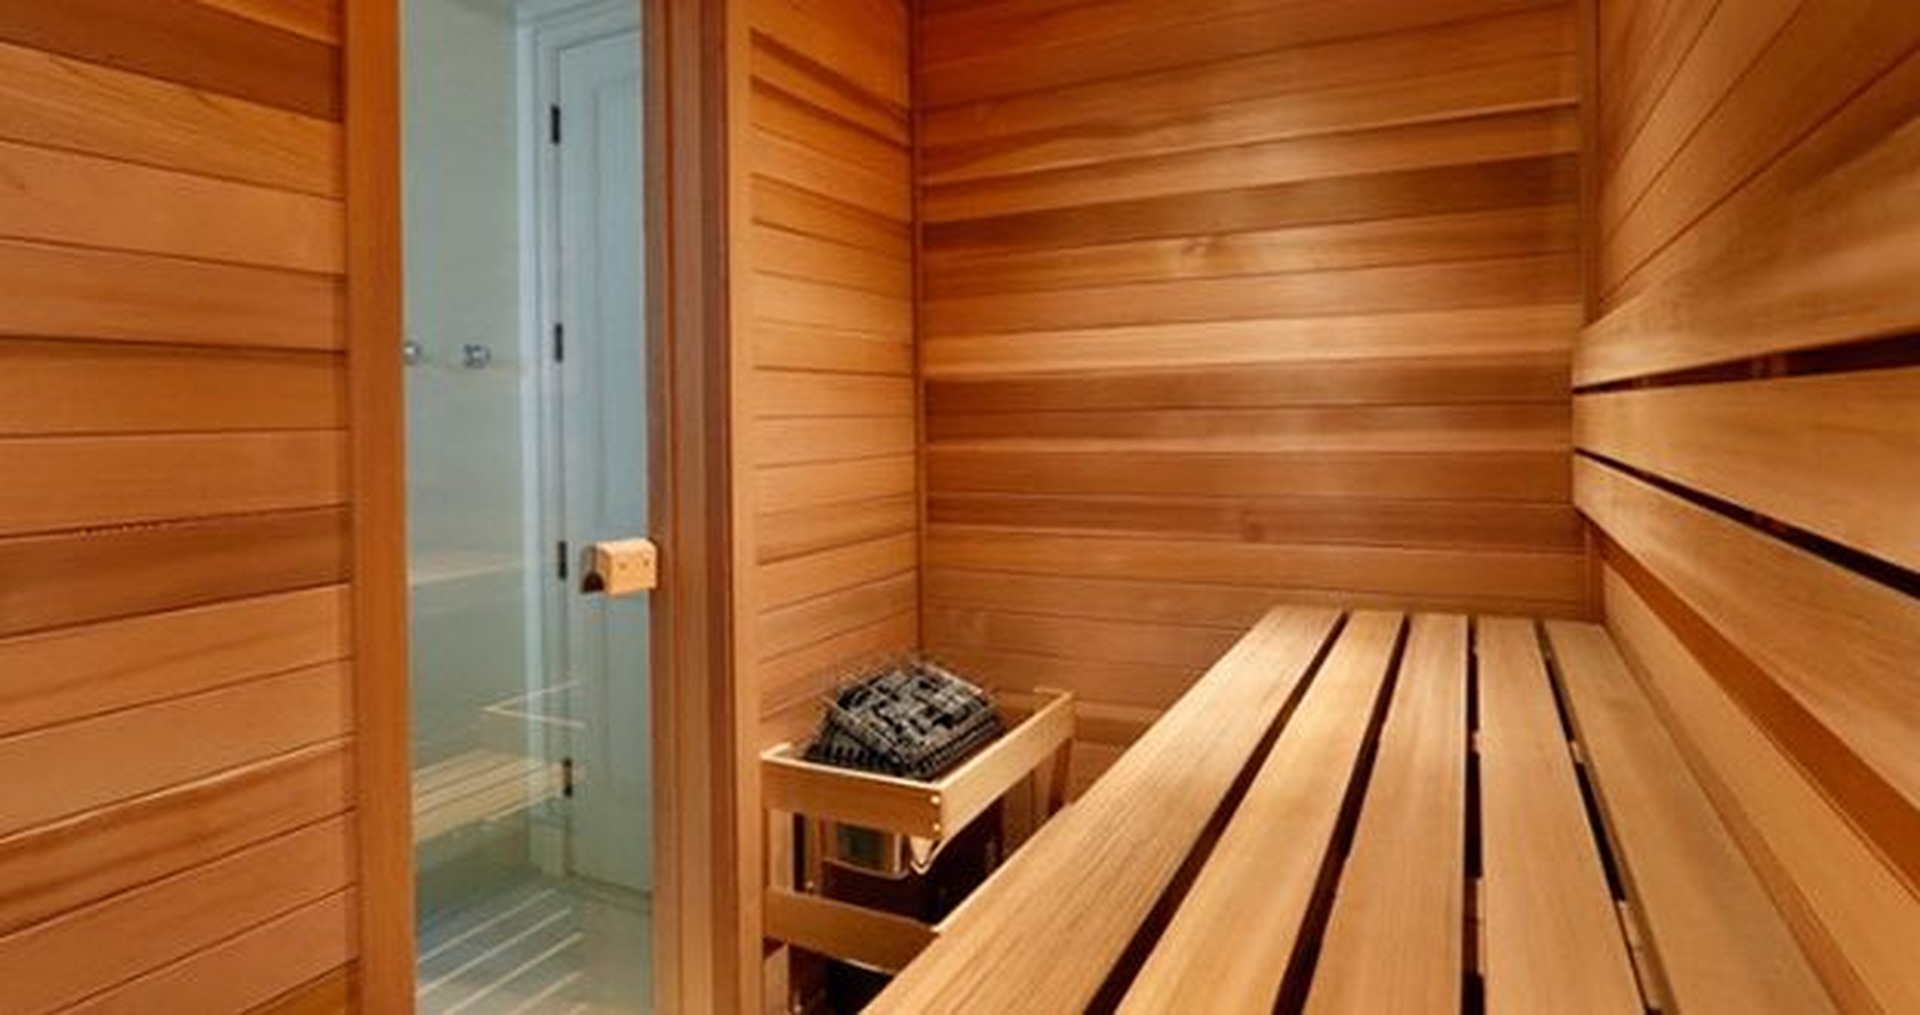 Interno sauna.jpg